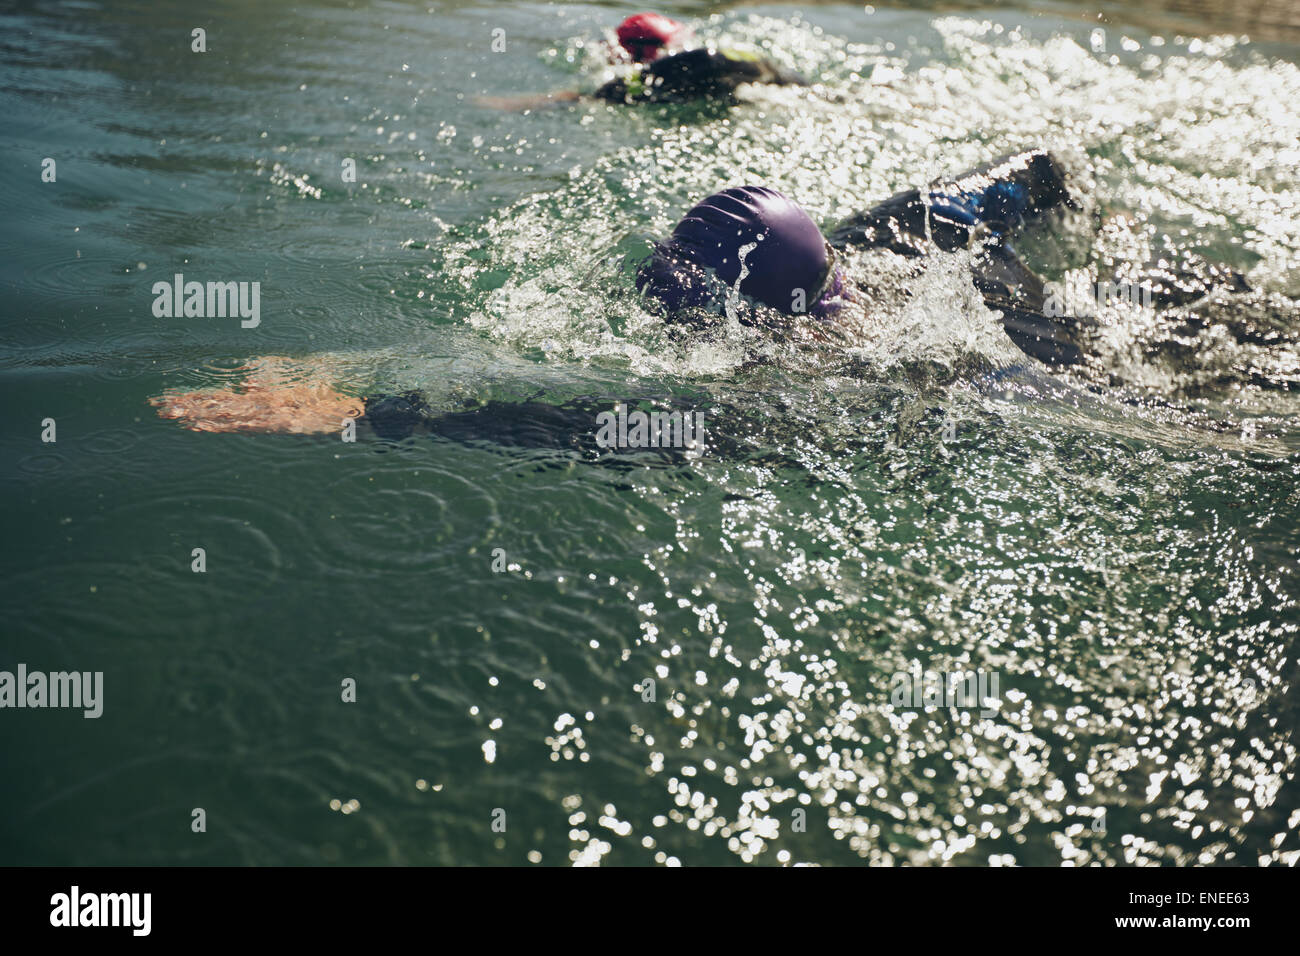 Gli atleti di nuoto in una competizione. Open Water Swimming, atleti nuoto a lunga distanza. Foto Stock